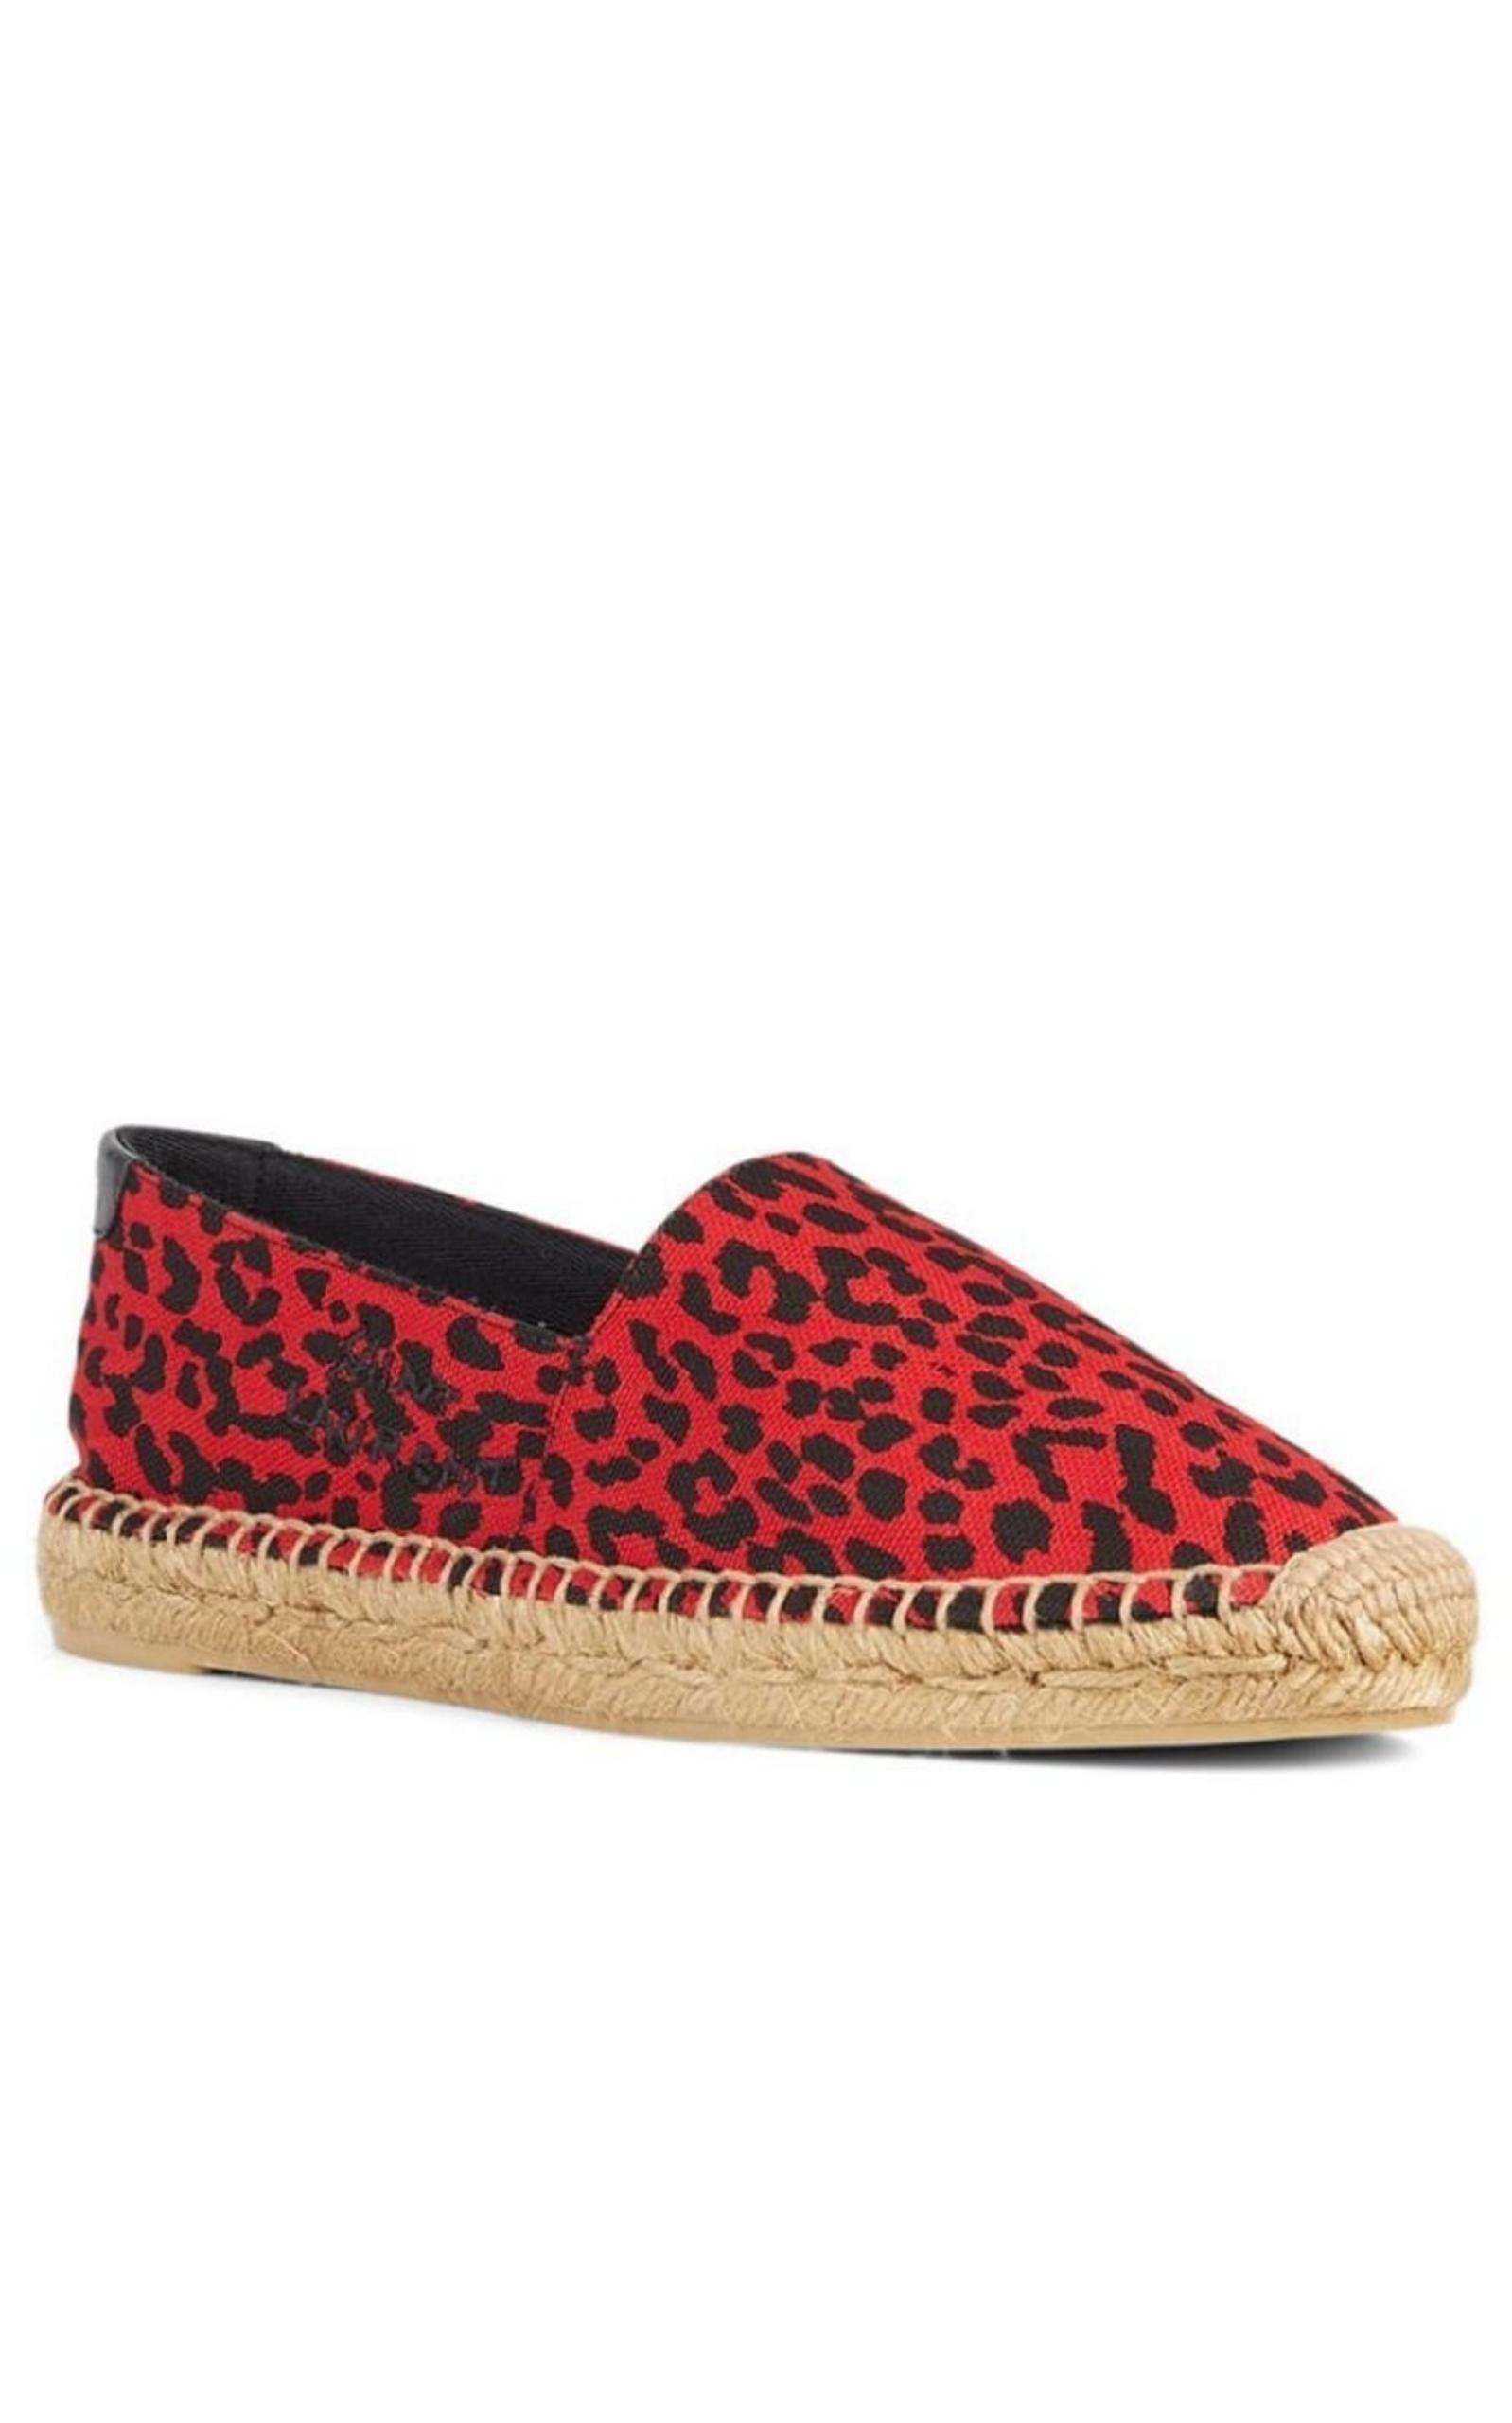 Saint Laurent Leopard-printed espadrilles, Women's Shoes